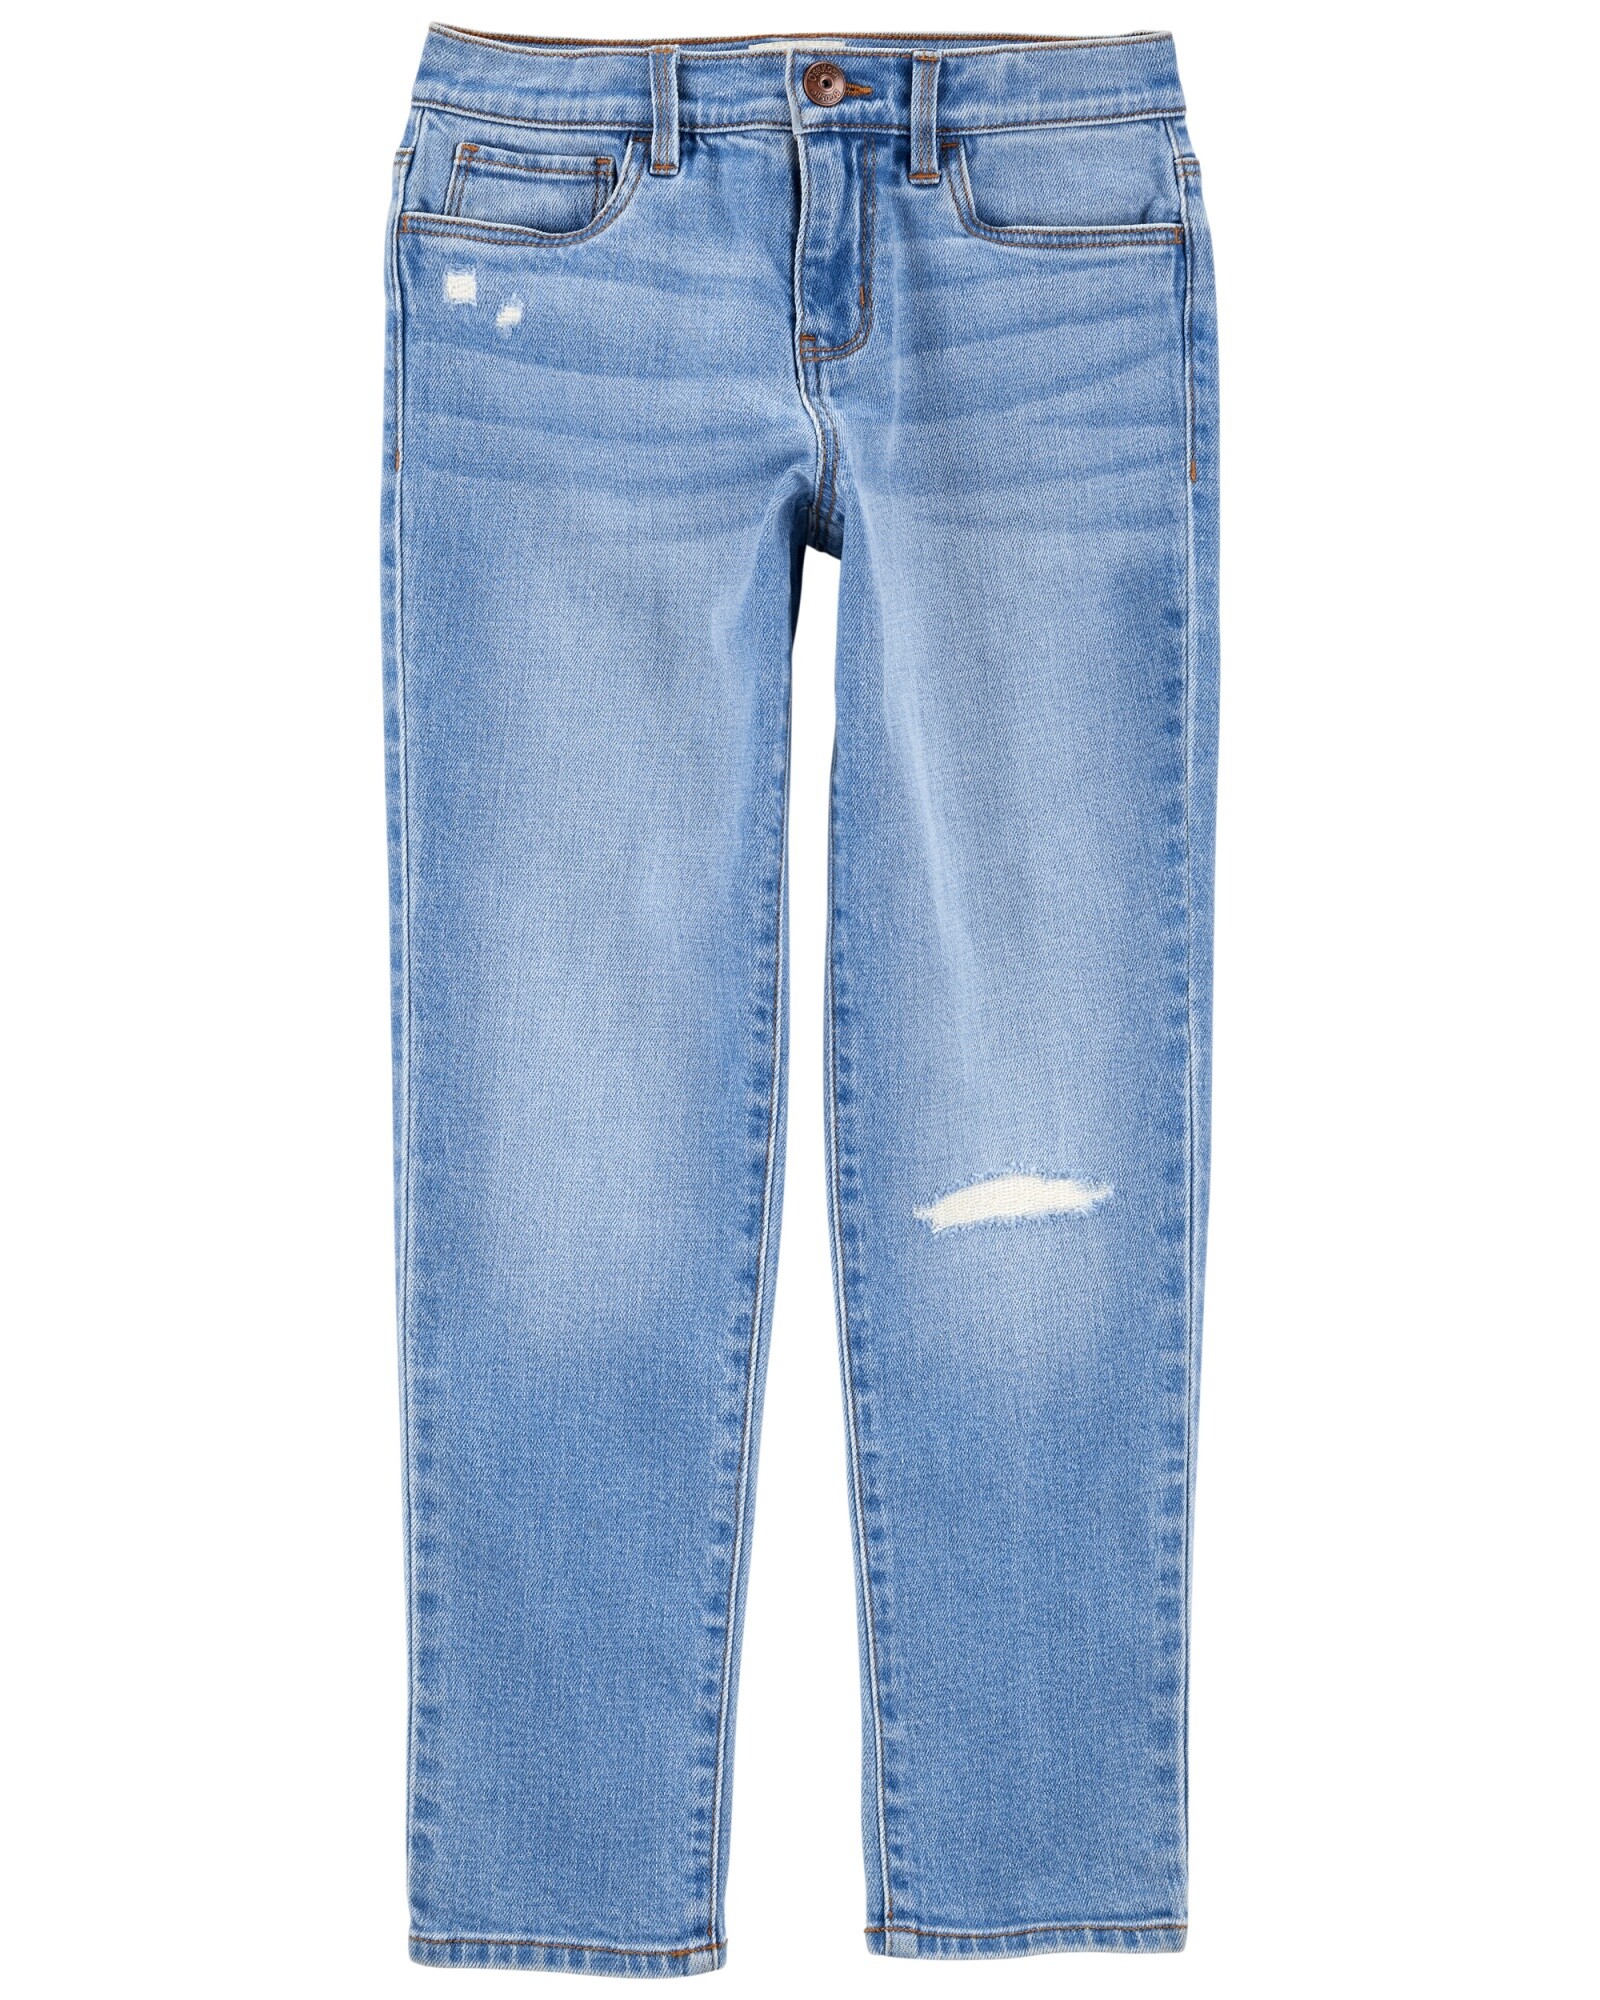 Pantalón de jean con detalles rasgados. Talles 6-8 Sin color